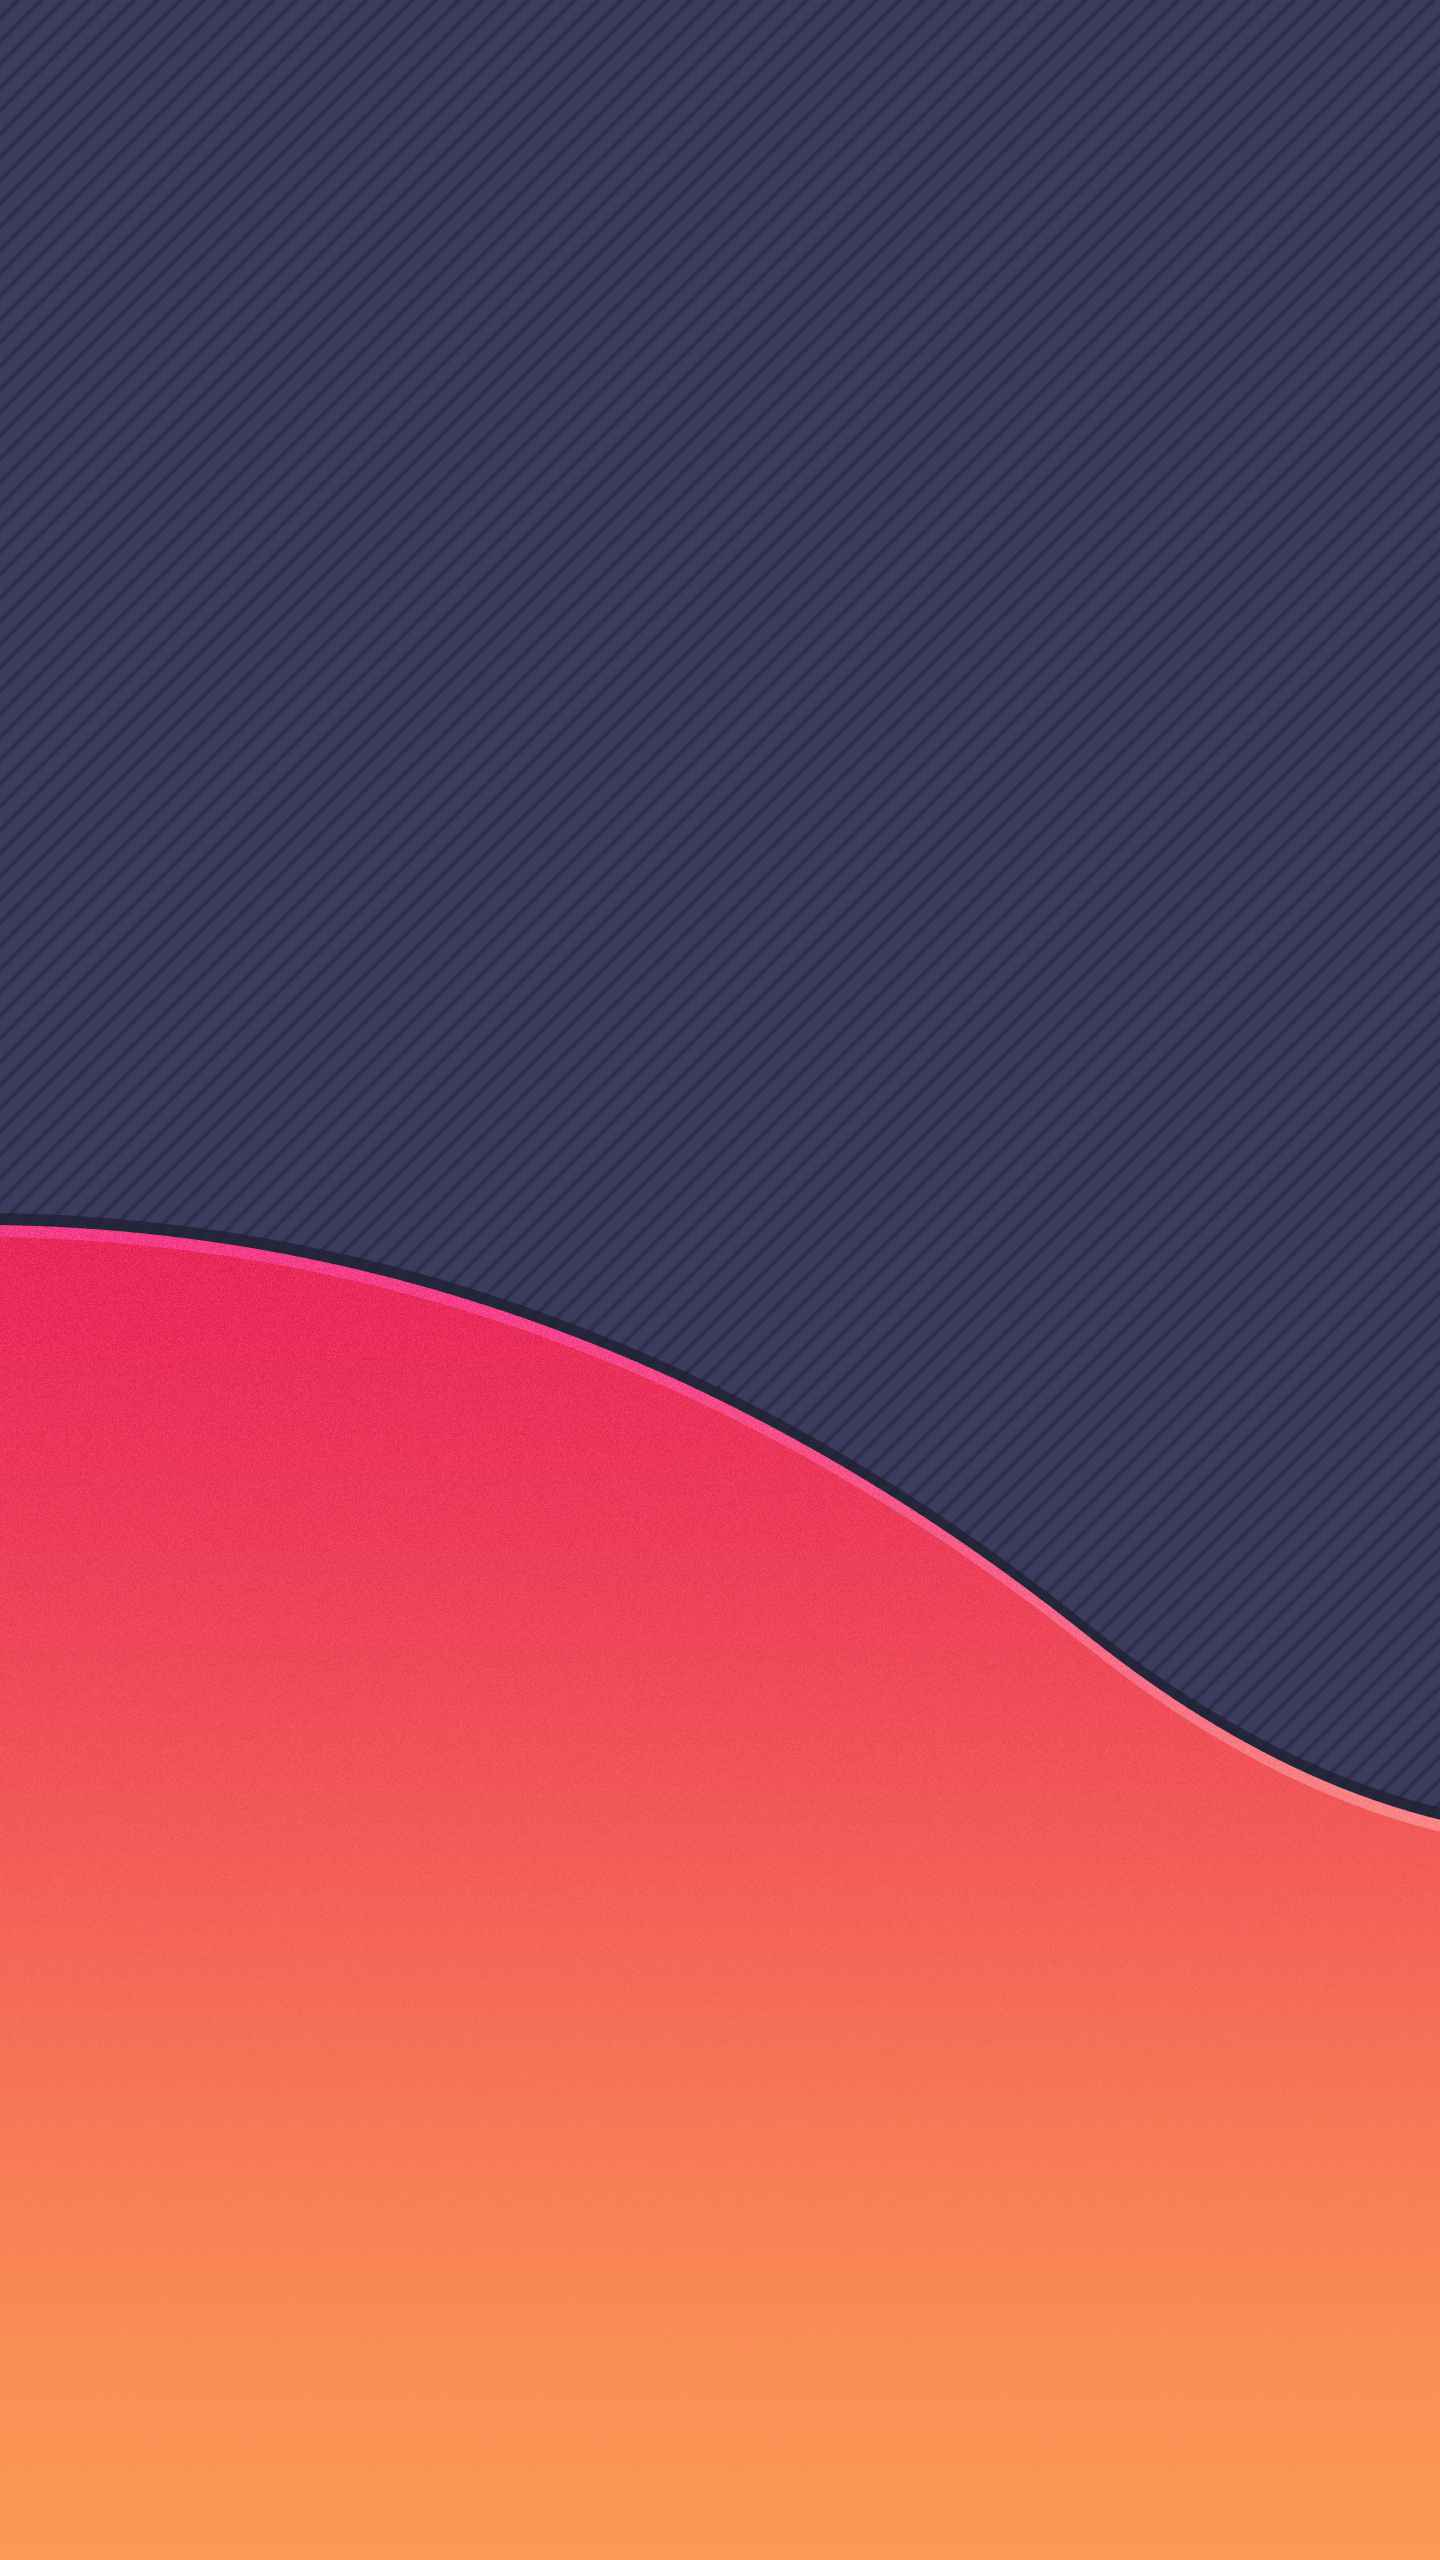 Sunset Wave IPhone Wallpaper Wallpaper, iPhone Wallpaper